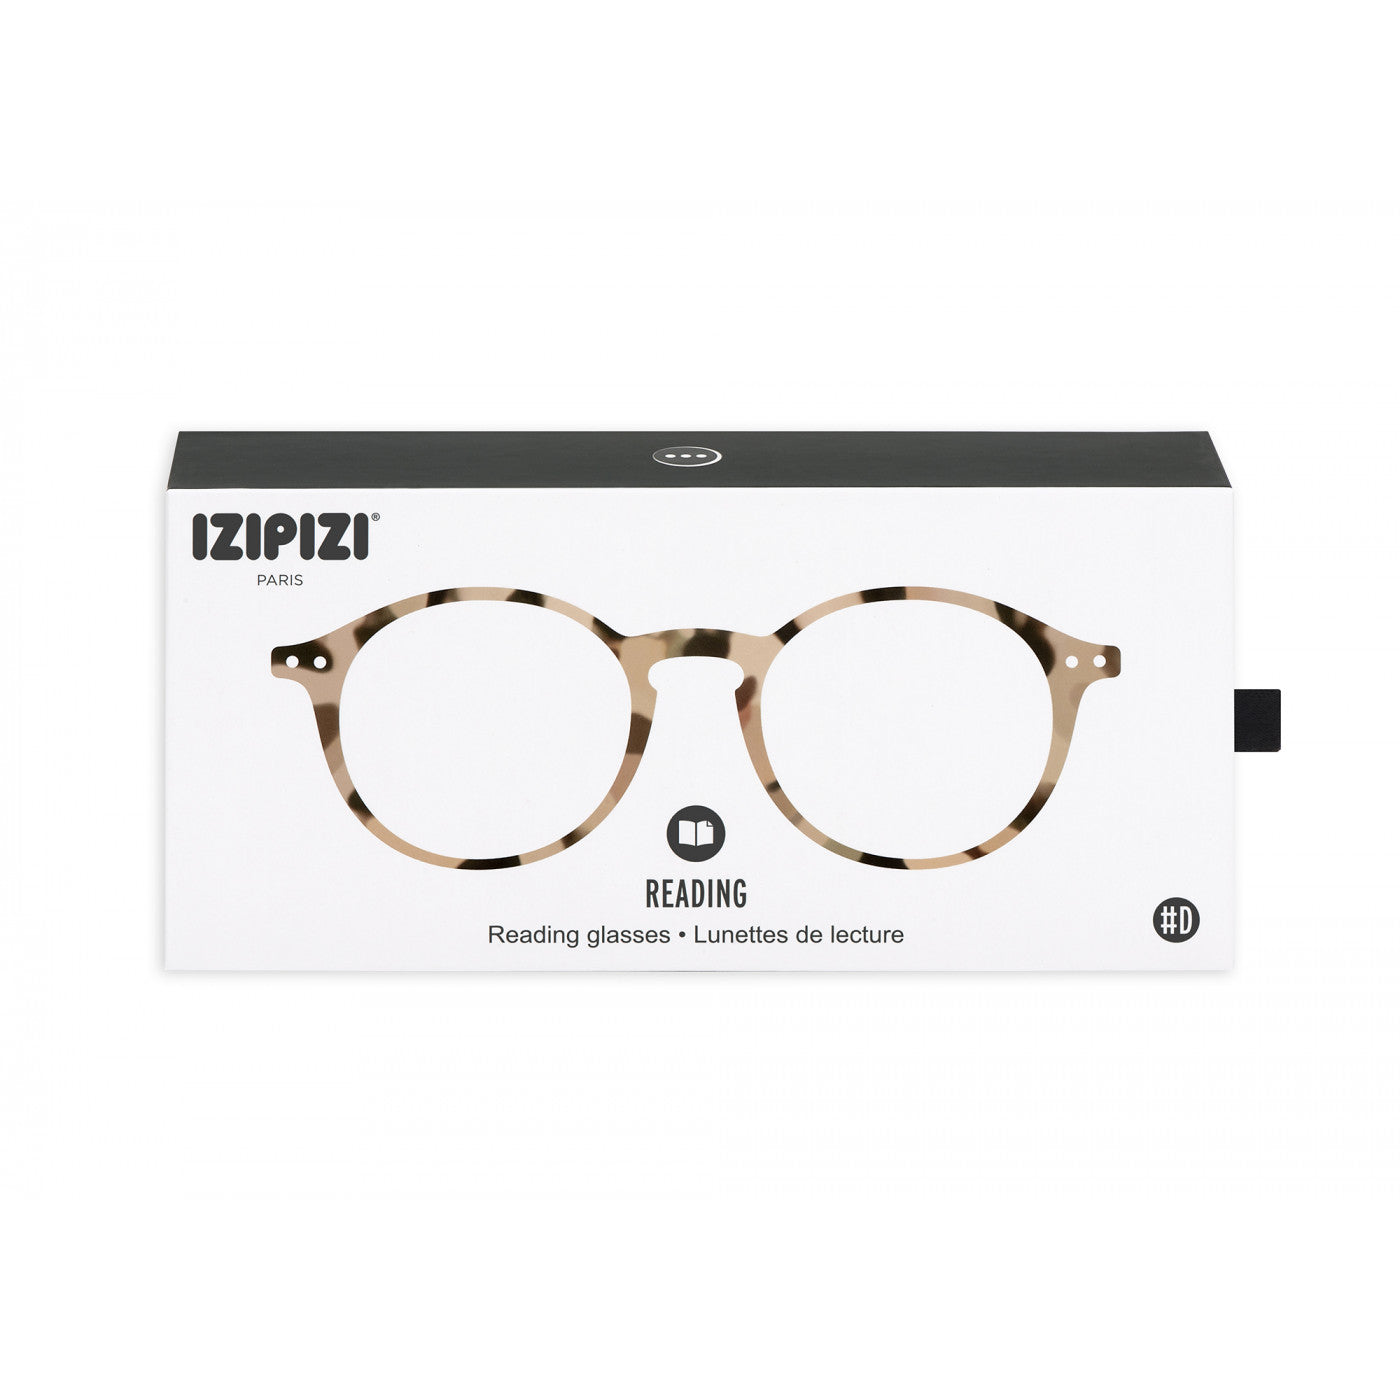 Unisex Reading Glasses - Style D - Light Tortoise 2